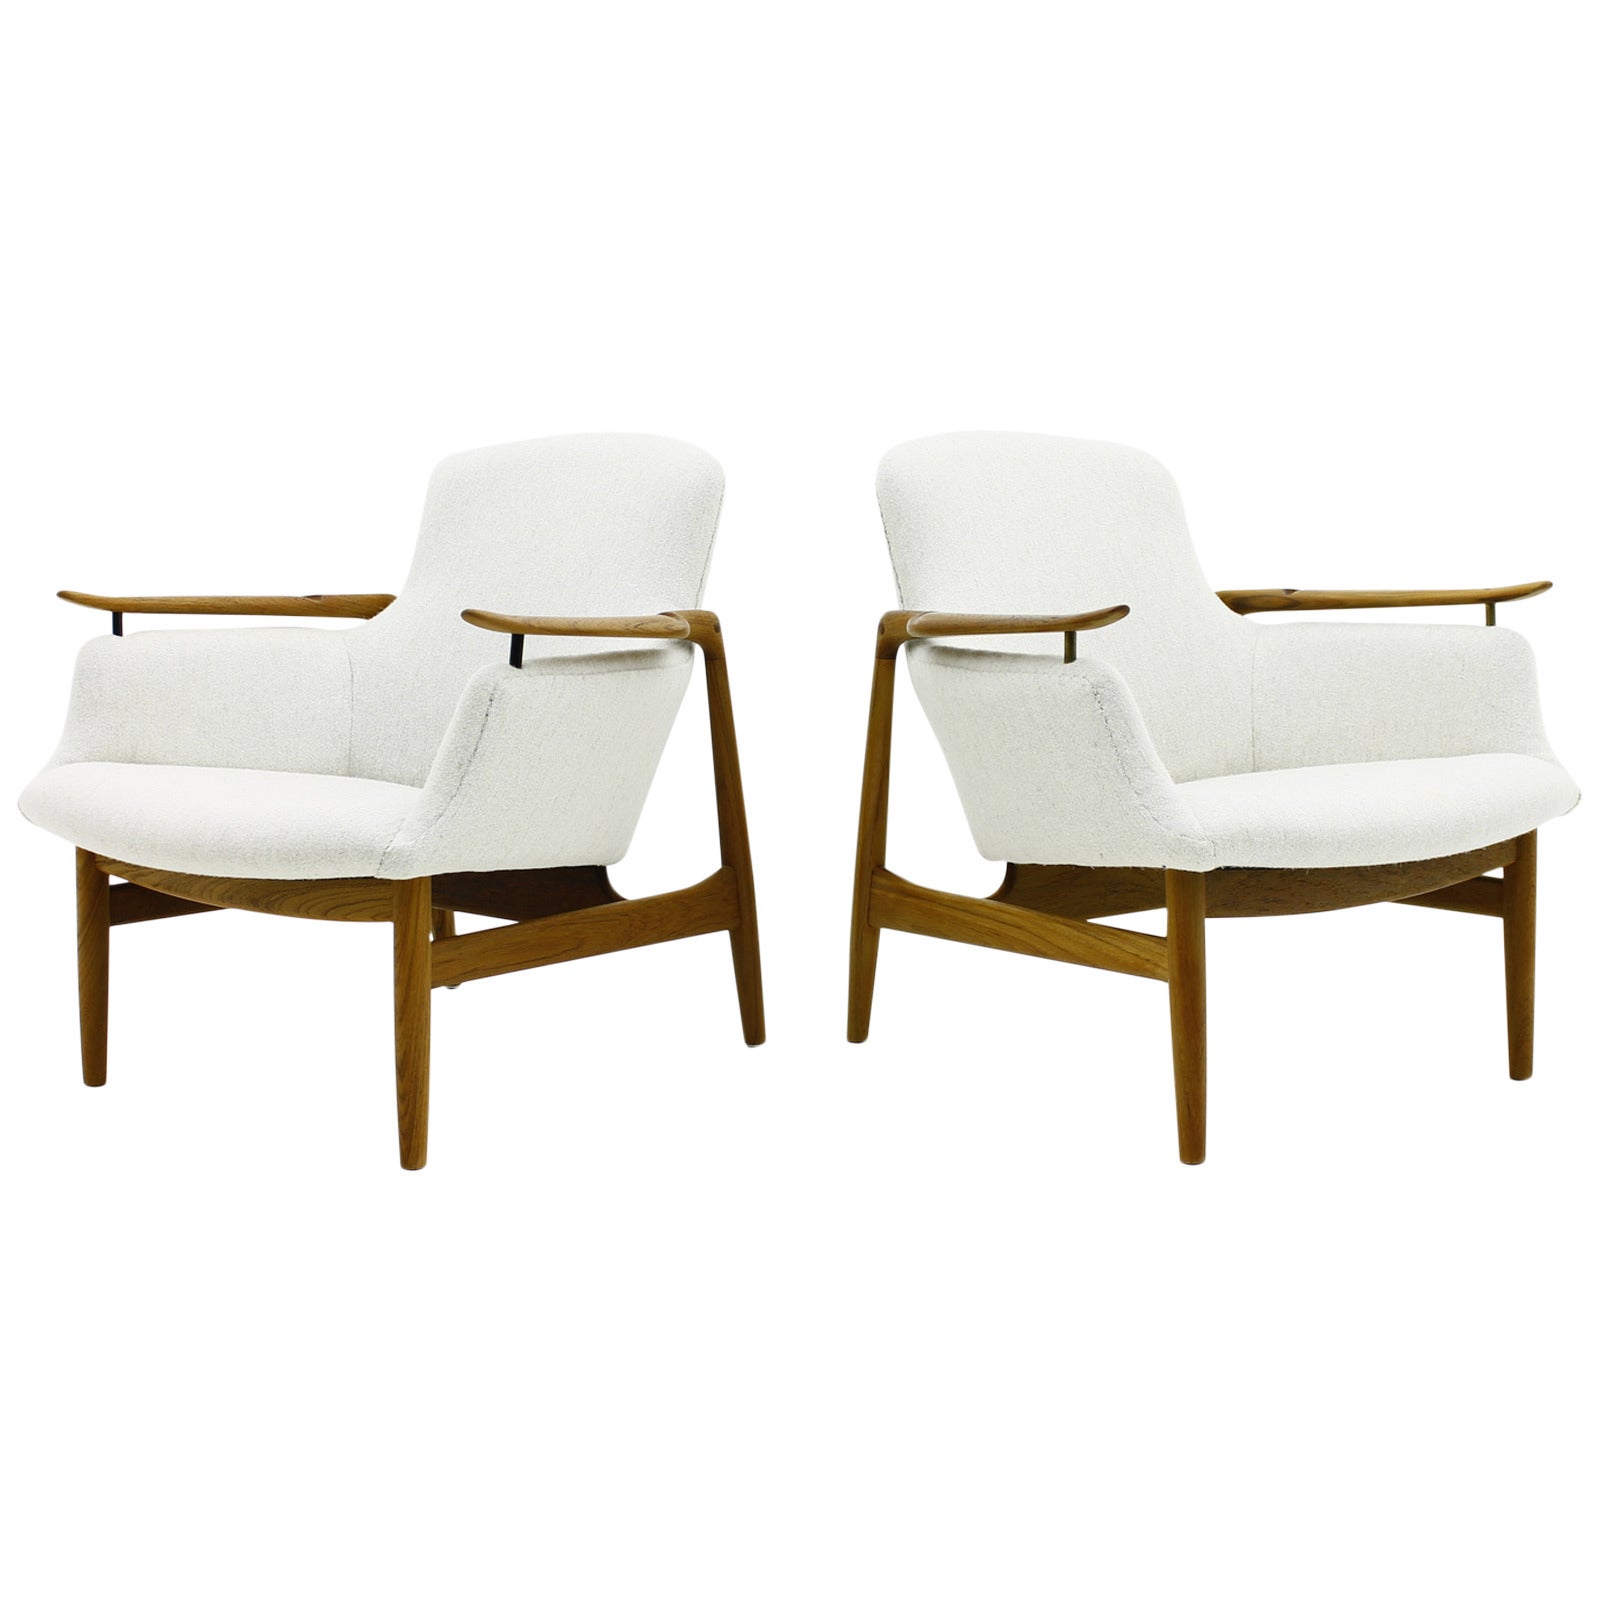 Pair of Finn Juhl Teak Lounge Chairs NV 53 for Niels Vodder, 1953